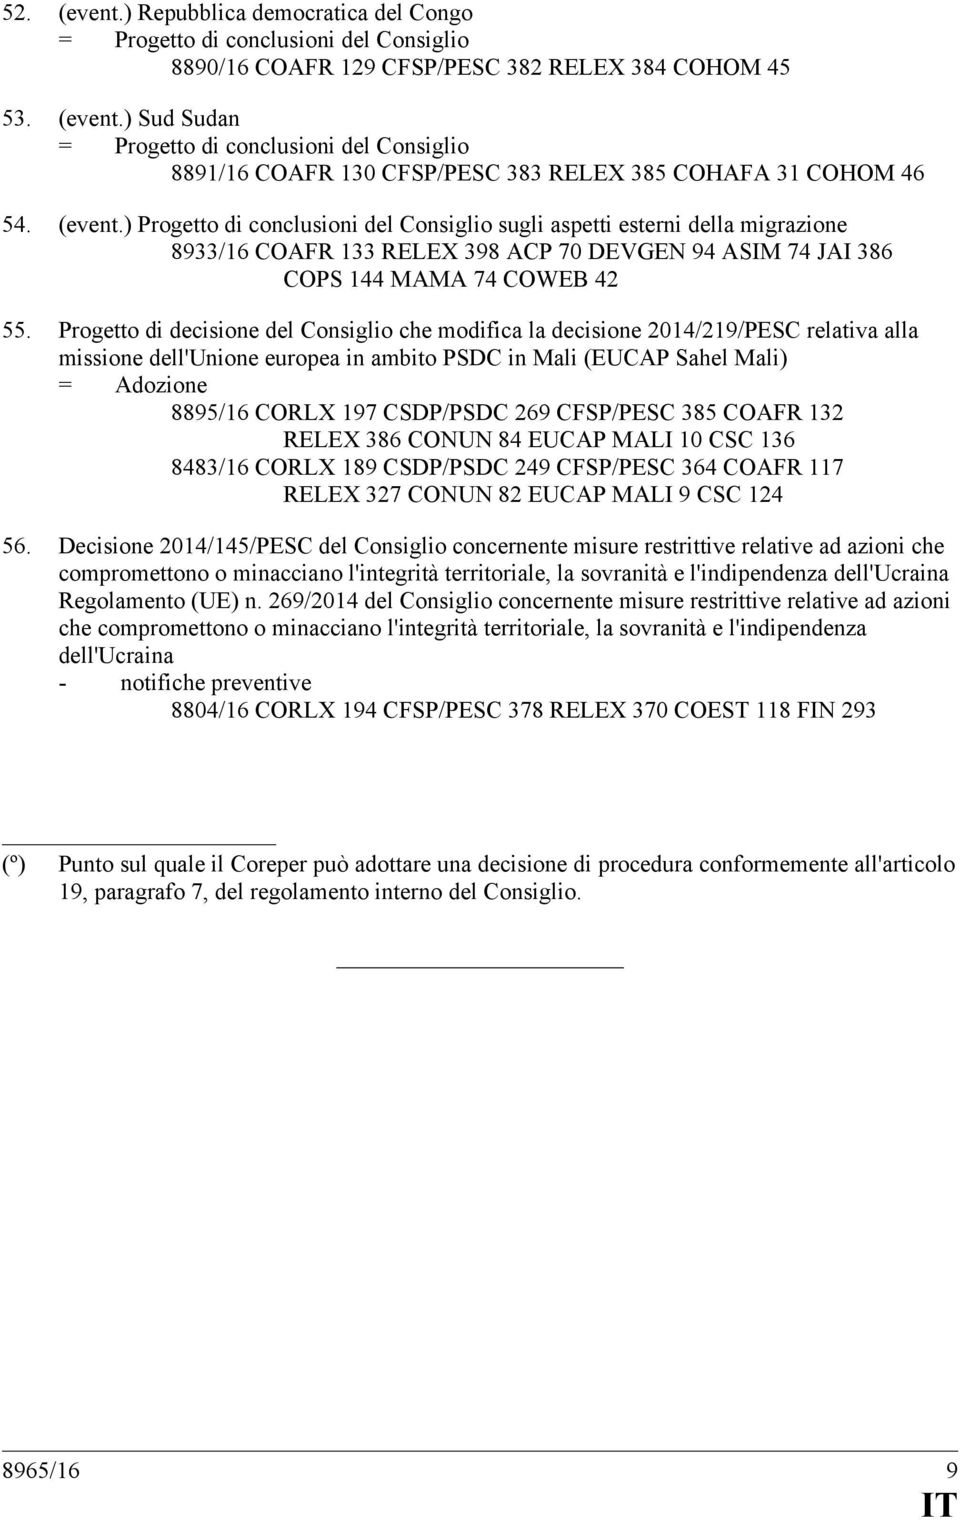 Progetto di decisione del Consiglio che modifica la decisione 2014/219/PESC relativa alla missione dell'unione europea in ambito PSDC in Mali (EUCAP Sahel Mali) 8895/16 CORLX 197 CSDP/PSDC 269